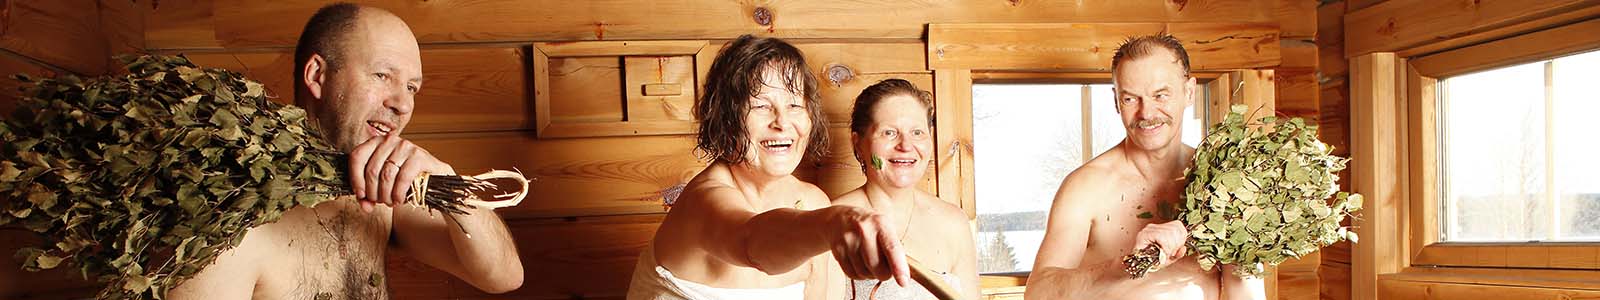 Bijzondere spa's, sauna- en wellnesservaringen in Scandinavië